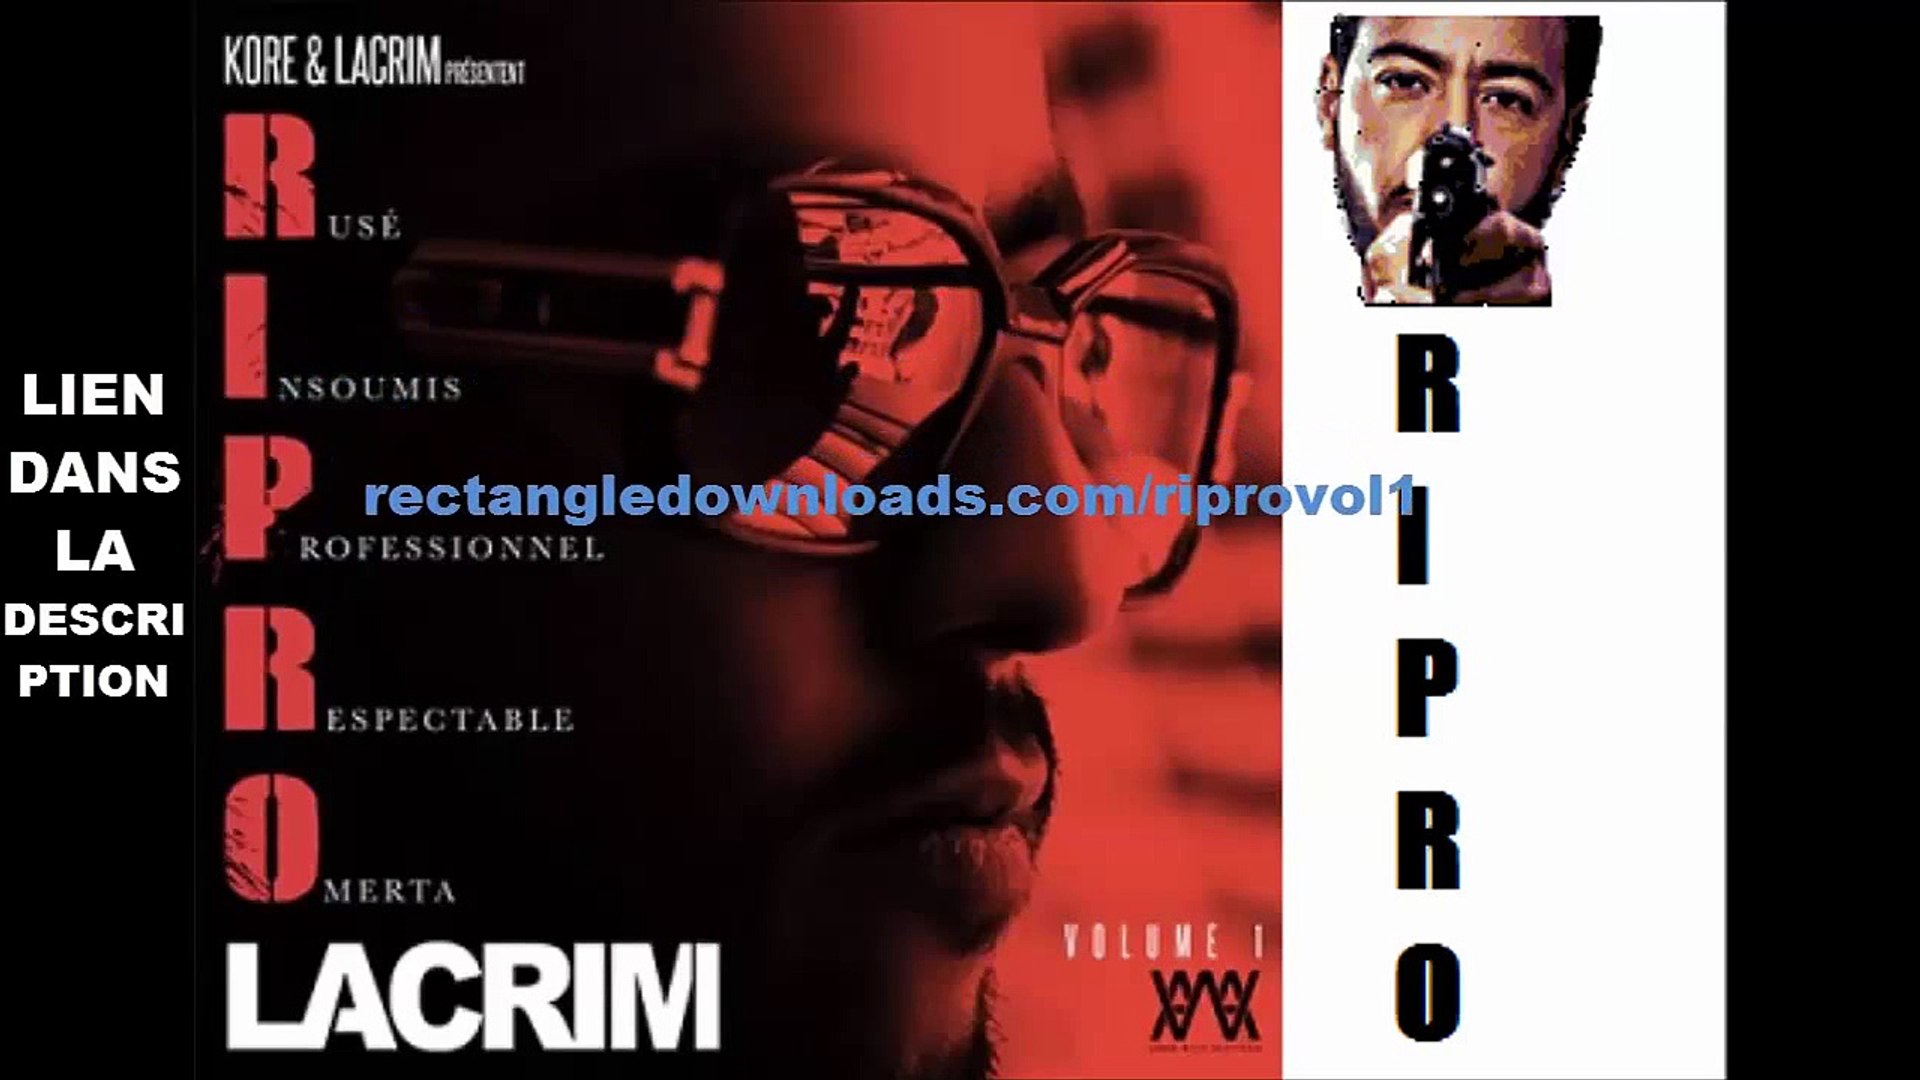 Lacrim Ripro Album complet Telecharger gratuitement MP3 haute qualité -  video Dailymotion